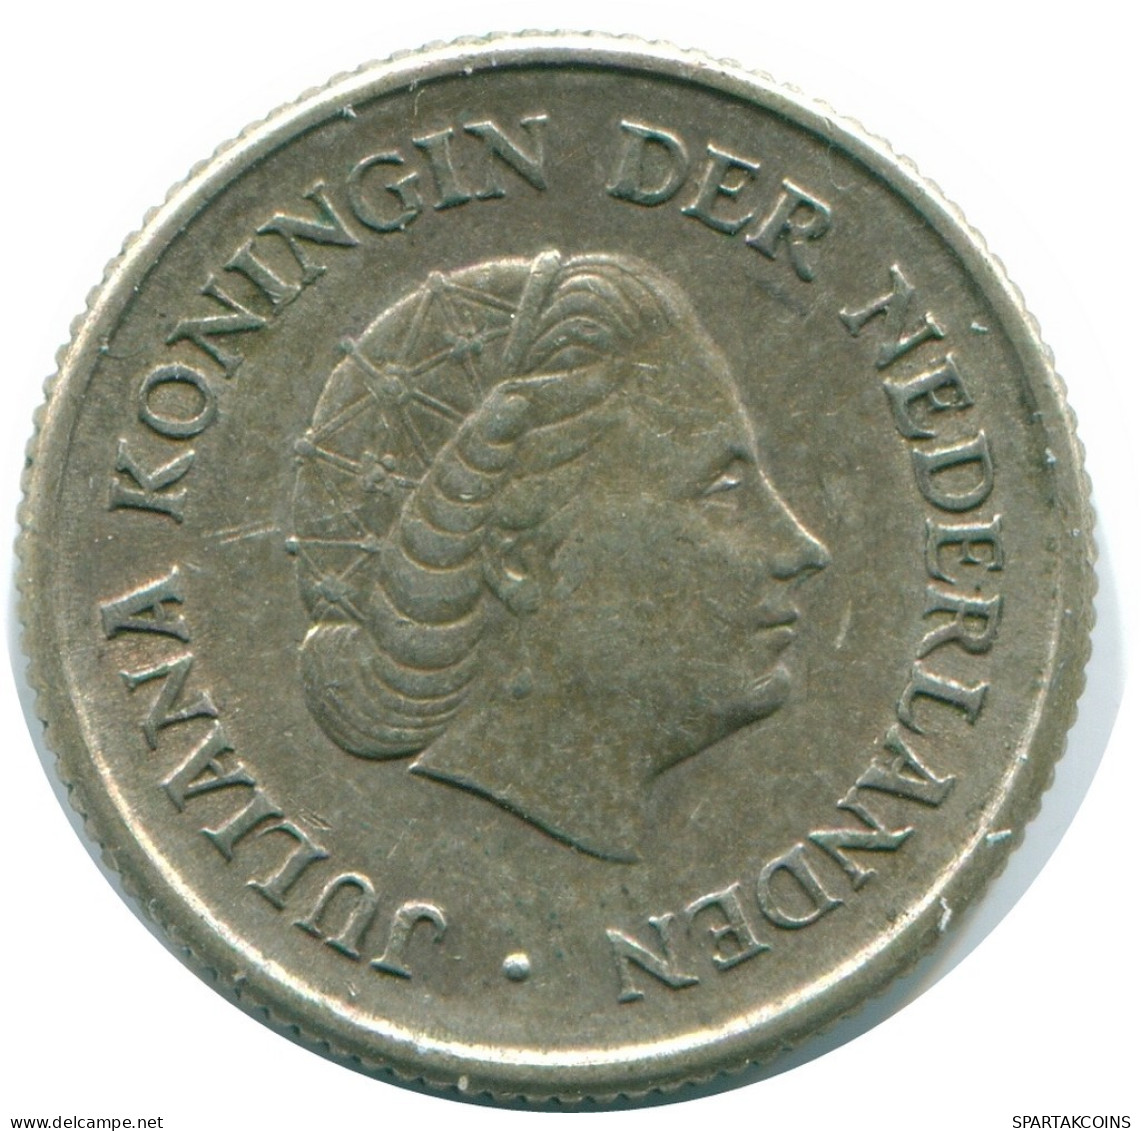 1/4 GULDEN 1967 NIEDERLÄNDISCHE ANTILLEN SILBER Koloniale Münze #NL11598.4.D.A - Antilles Néerlandaises